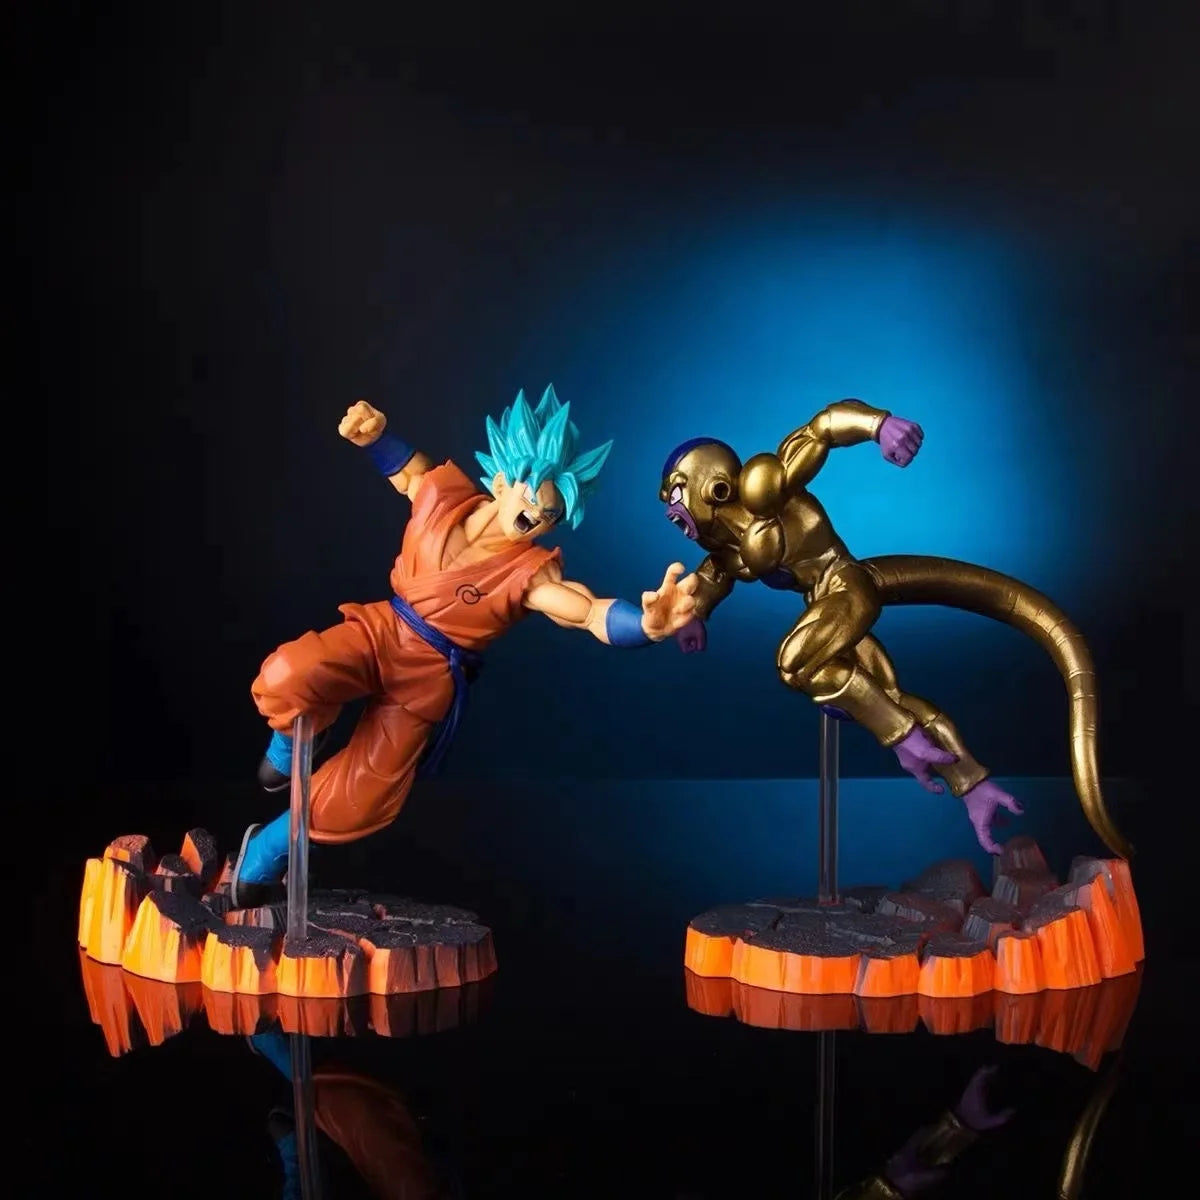 15cm Anime Dragon Ball Super saiyan Goku PVC Action Figure Collectible Model doll toy